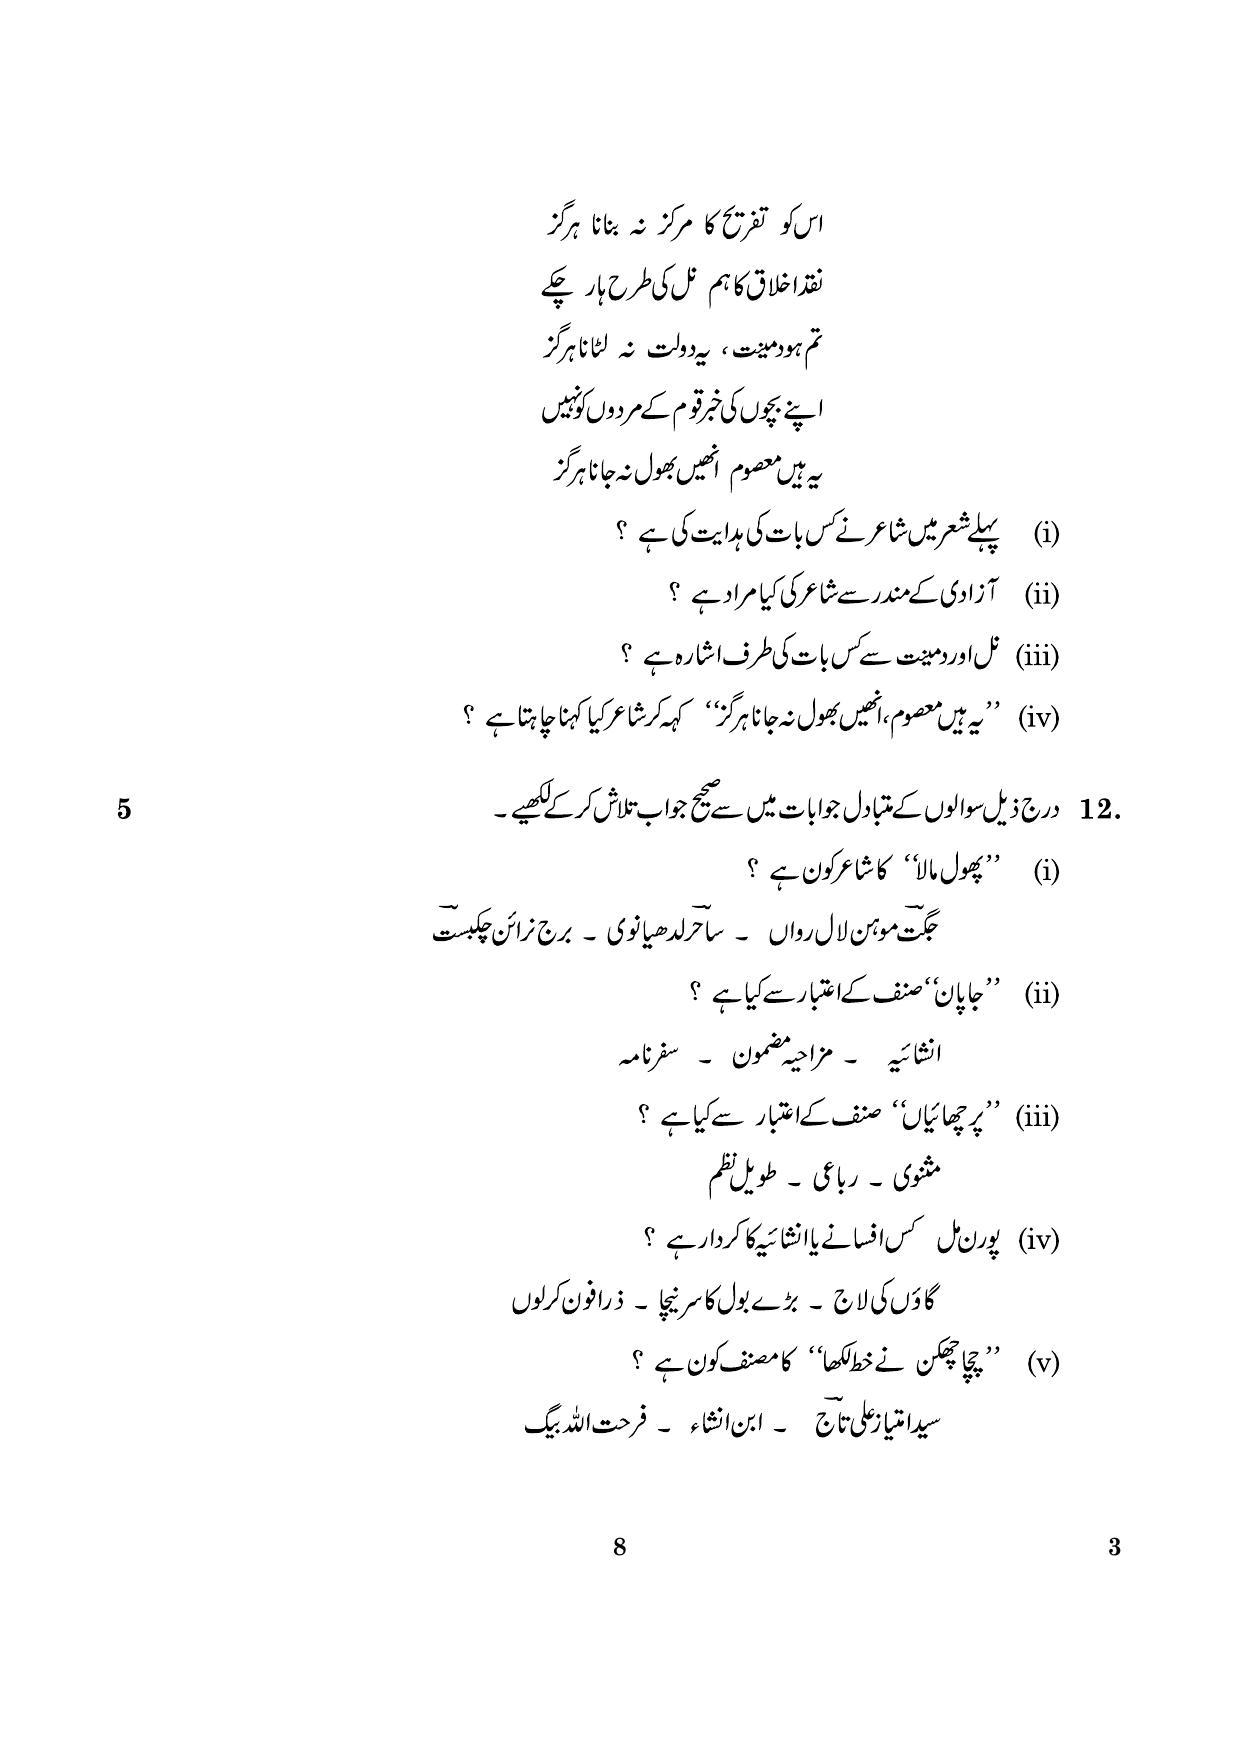 CBSE Class 12 003 Urdu Core 2016 Question Paper - Page 8